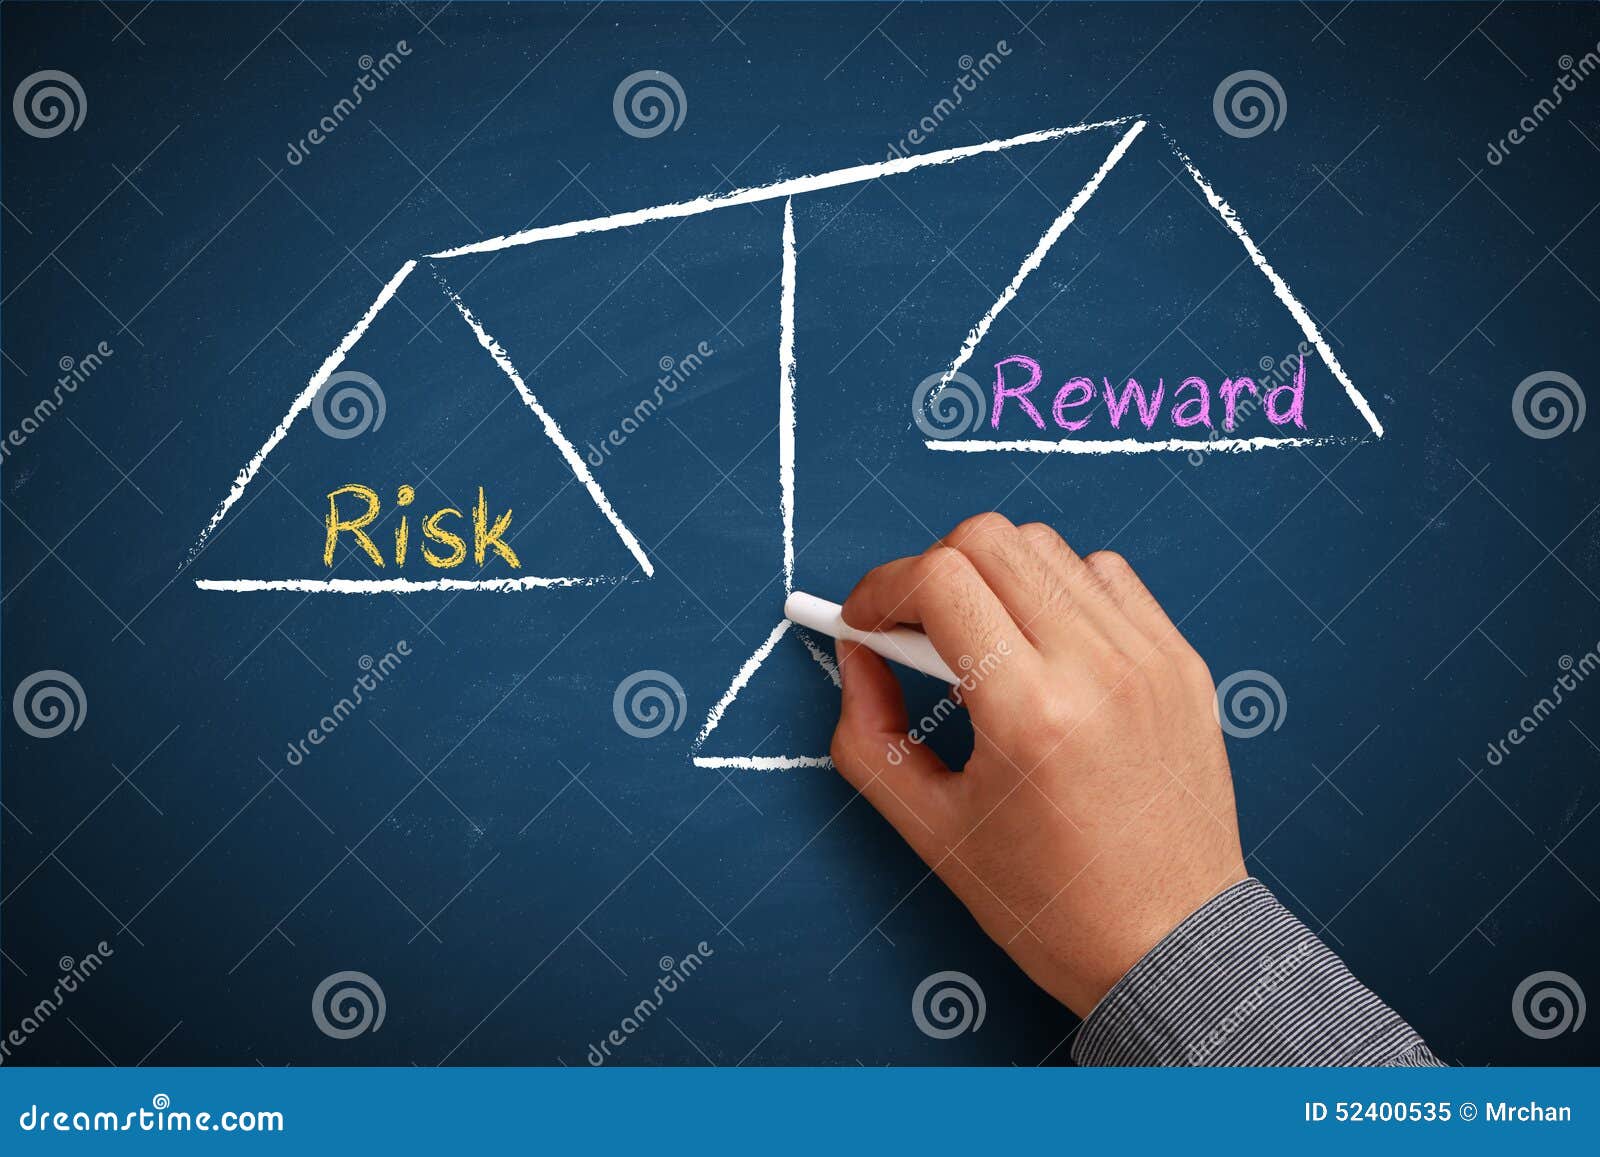 risk and reward balance